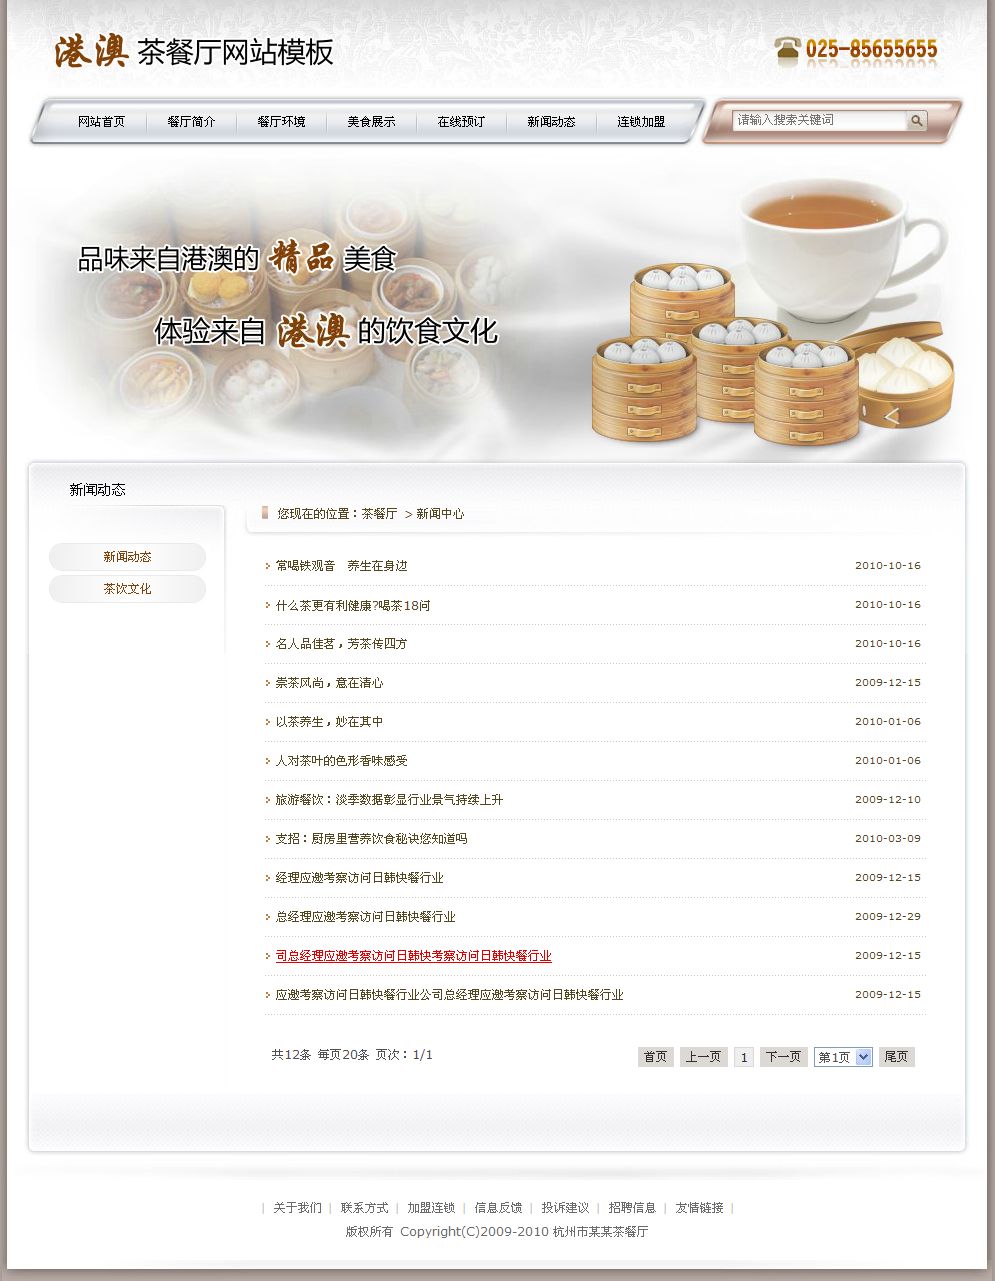 港粤茶餐厅网站新闻列表页